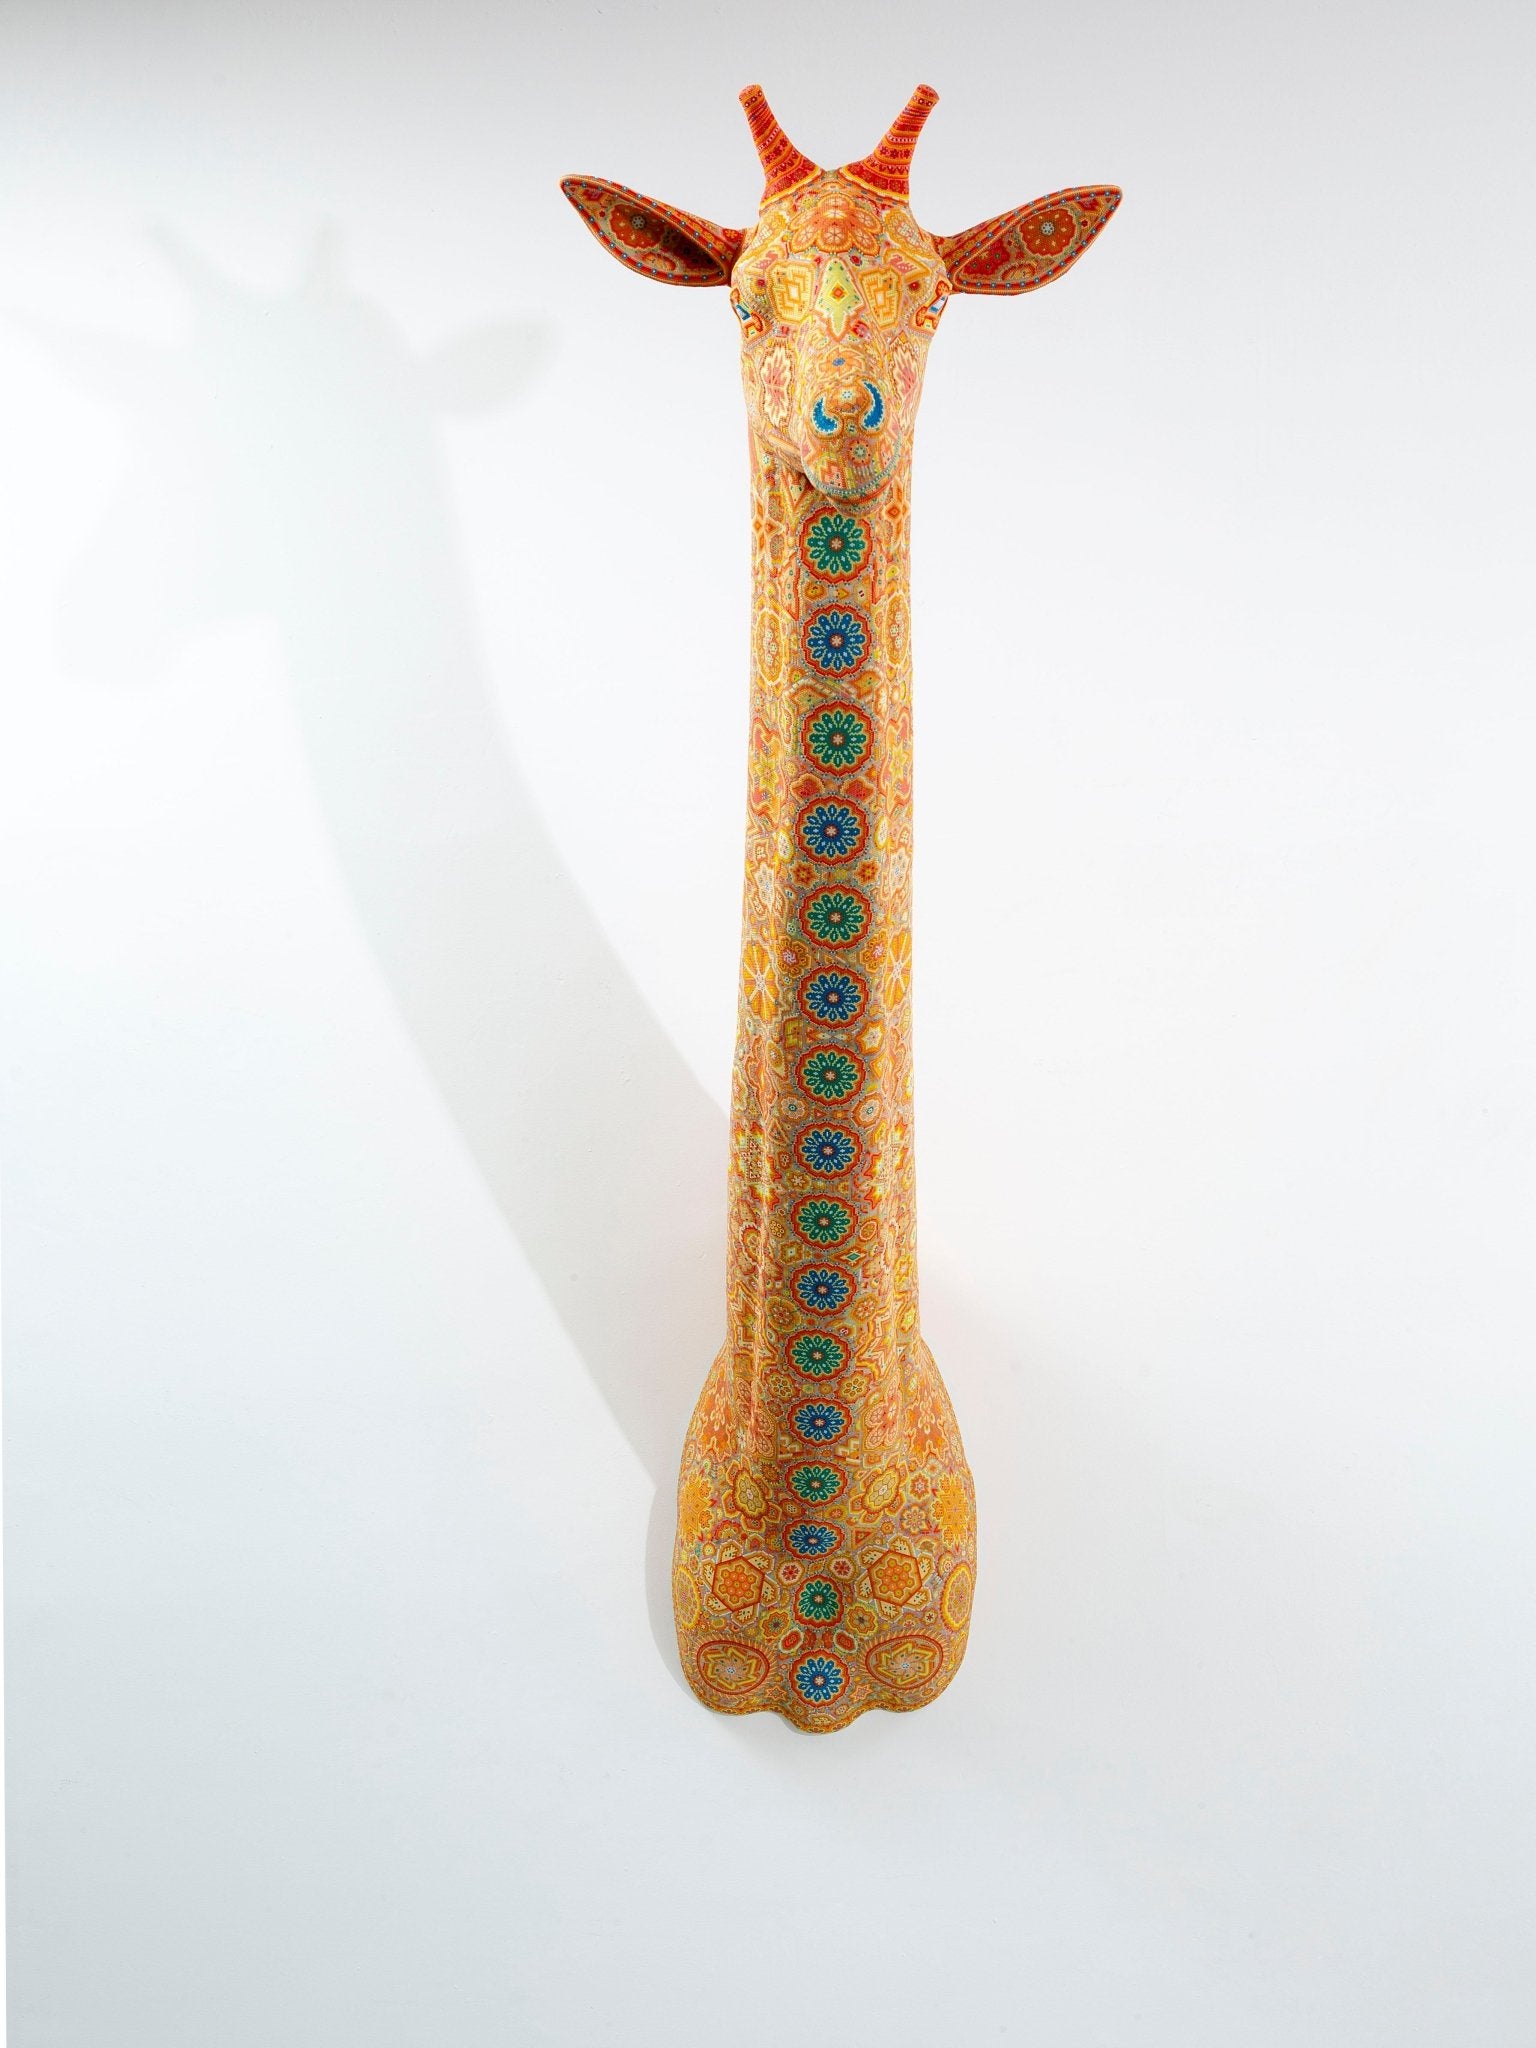 Presale - Huichol Art Sculpture - Giraffe Head - Wirikuta - Huichol Art - Marakame